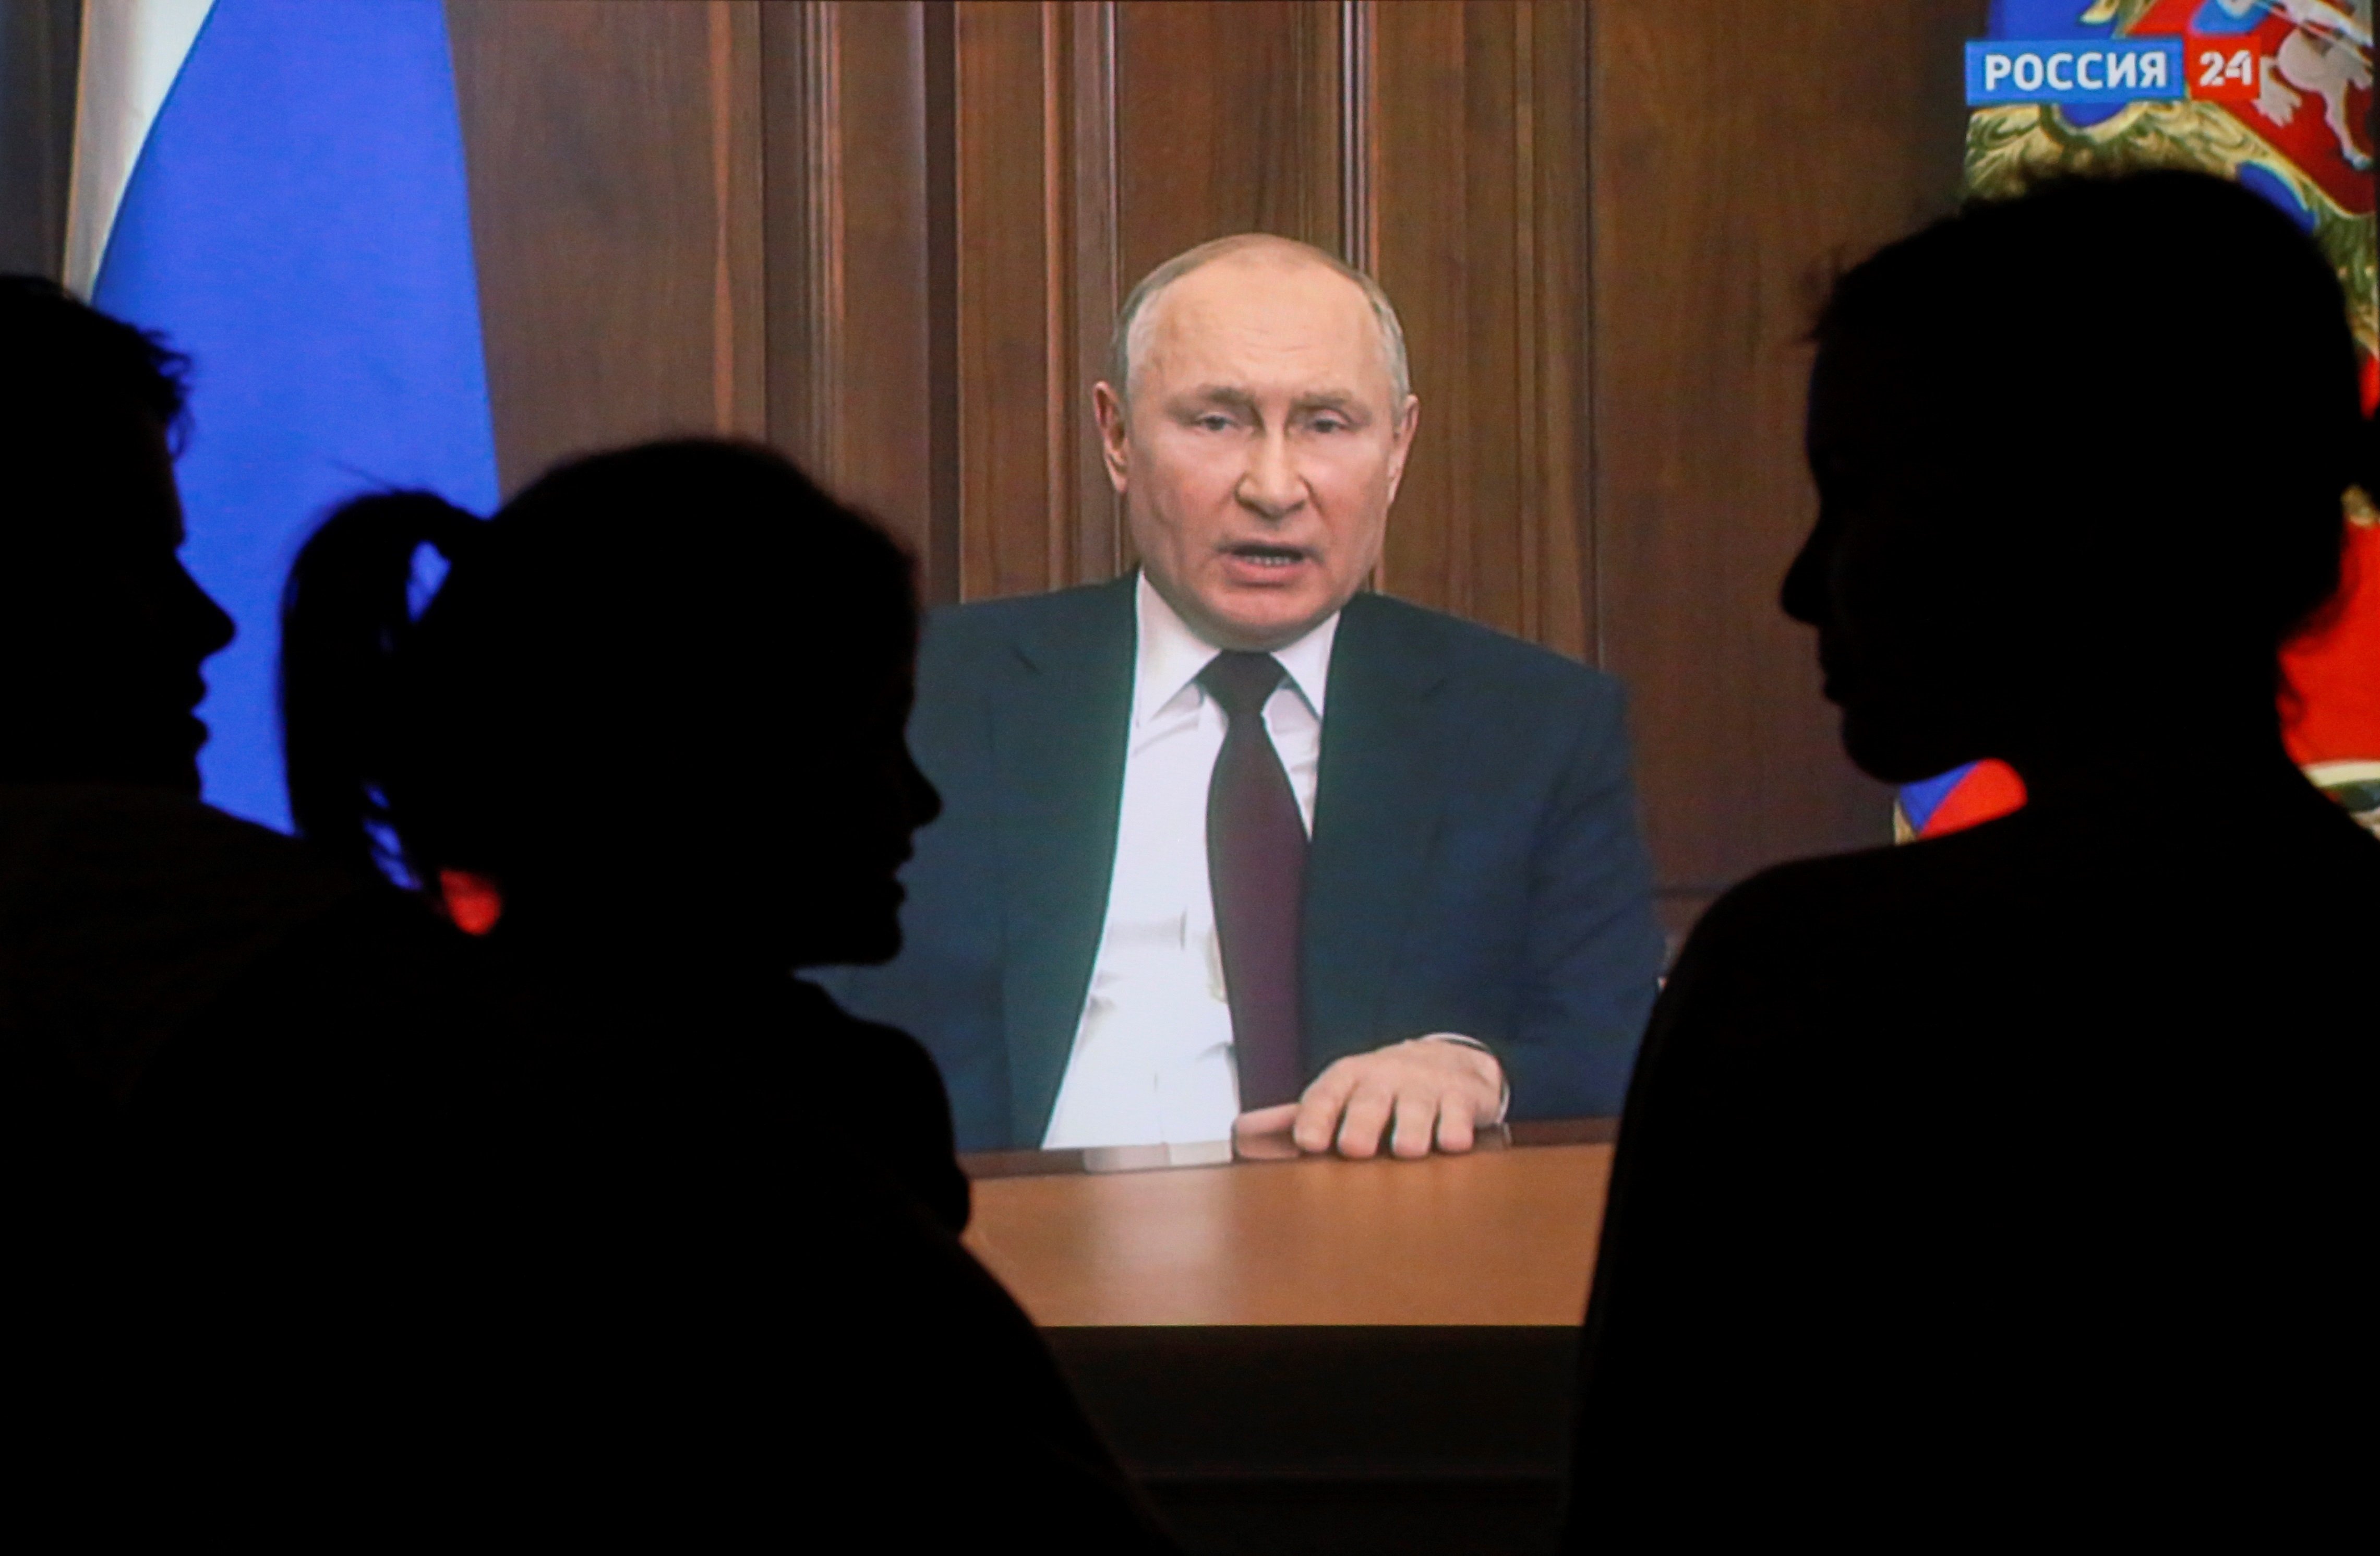 Los ojos clavados en Putin: la comunidad internacional se prepara para sancionar a Rusia